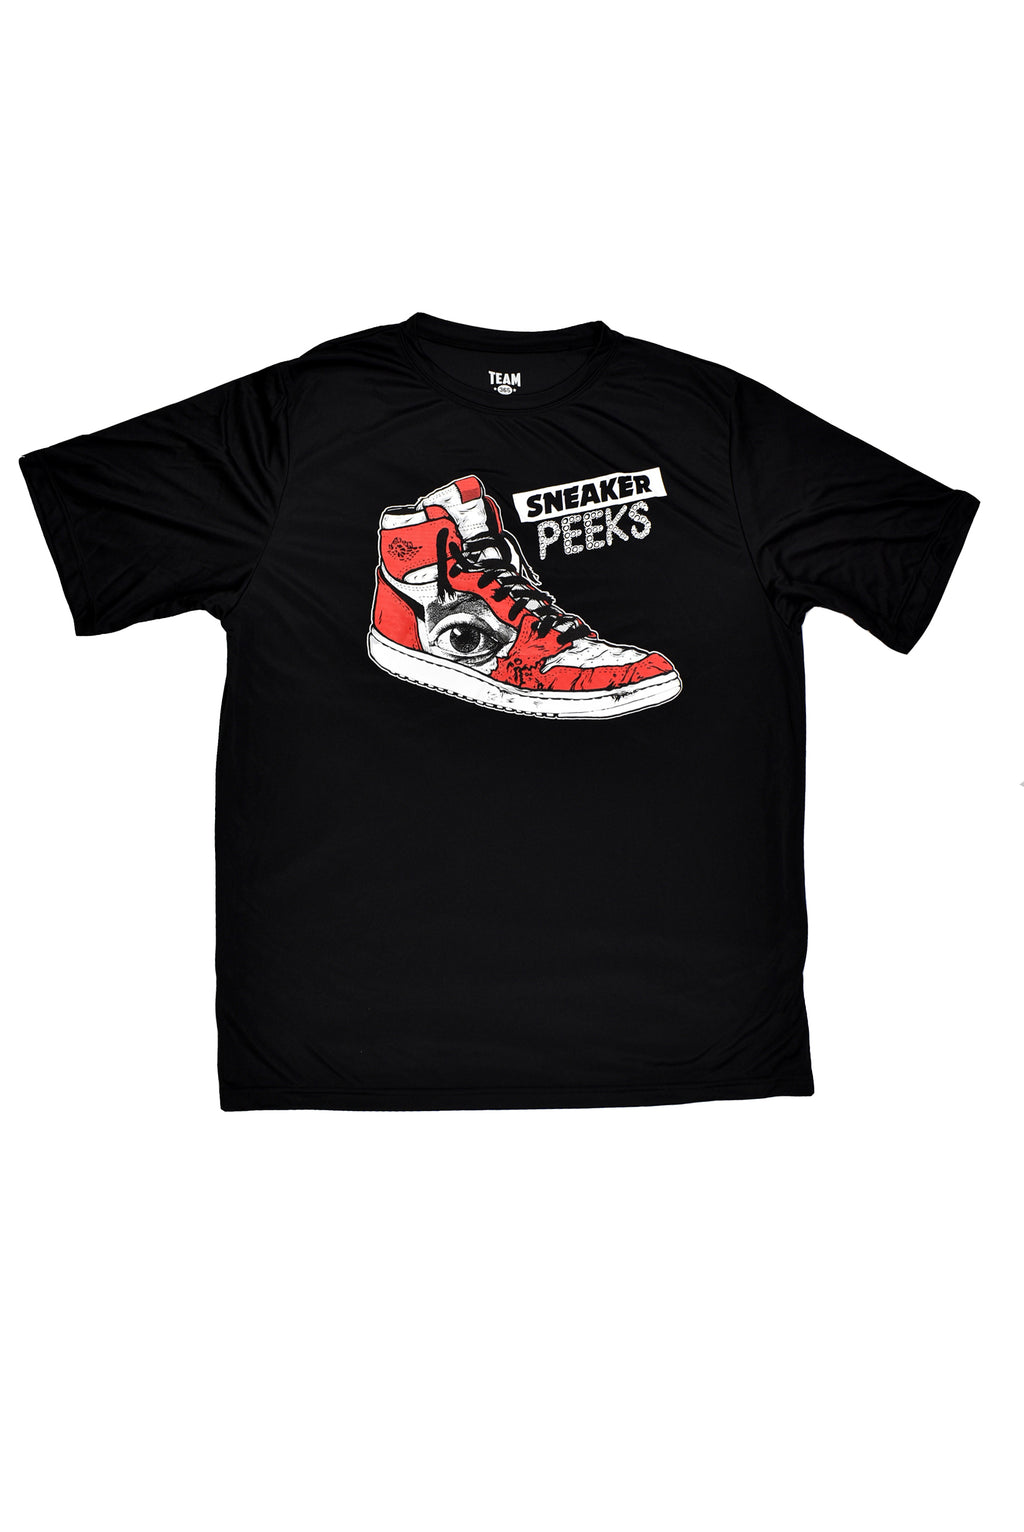 SneakerPeeks TEAM Shirt - Black